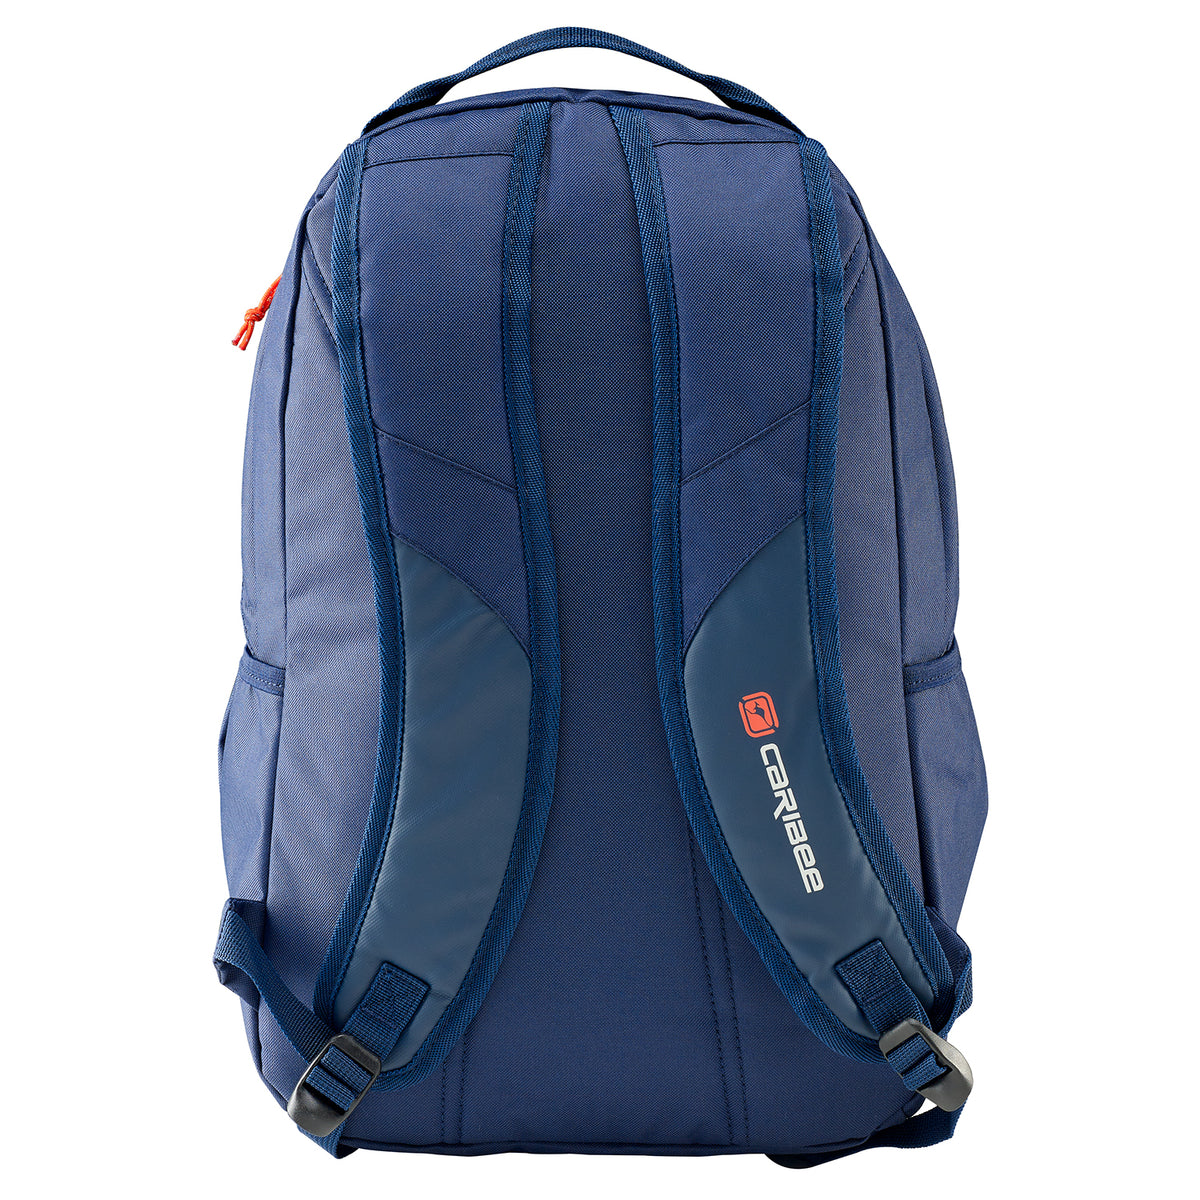 Caribee - Sierra 20lt Sports backpack - Navy/Red-2